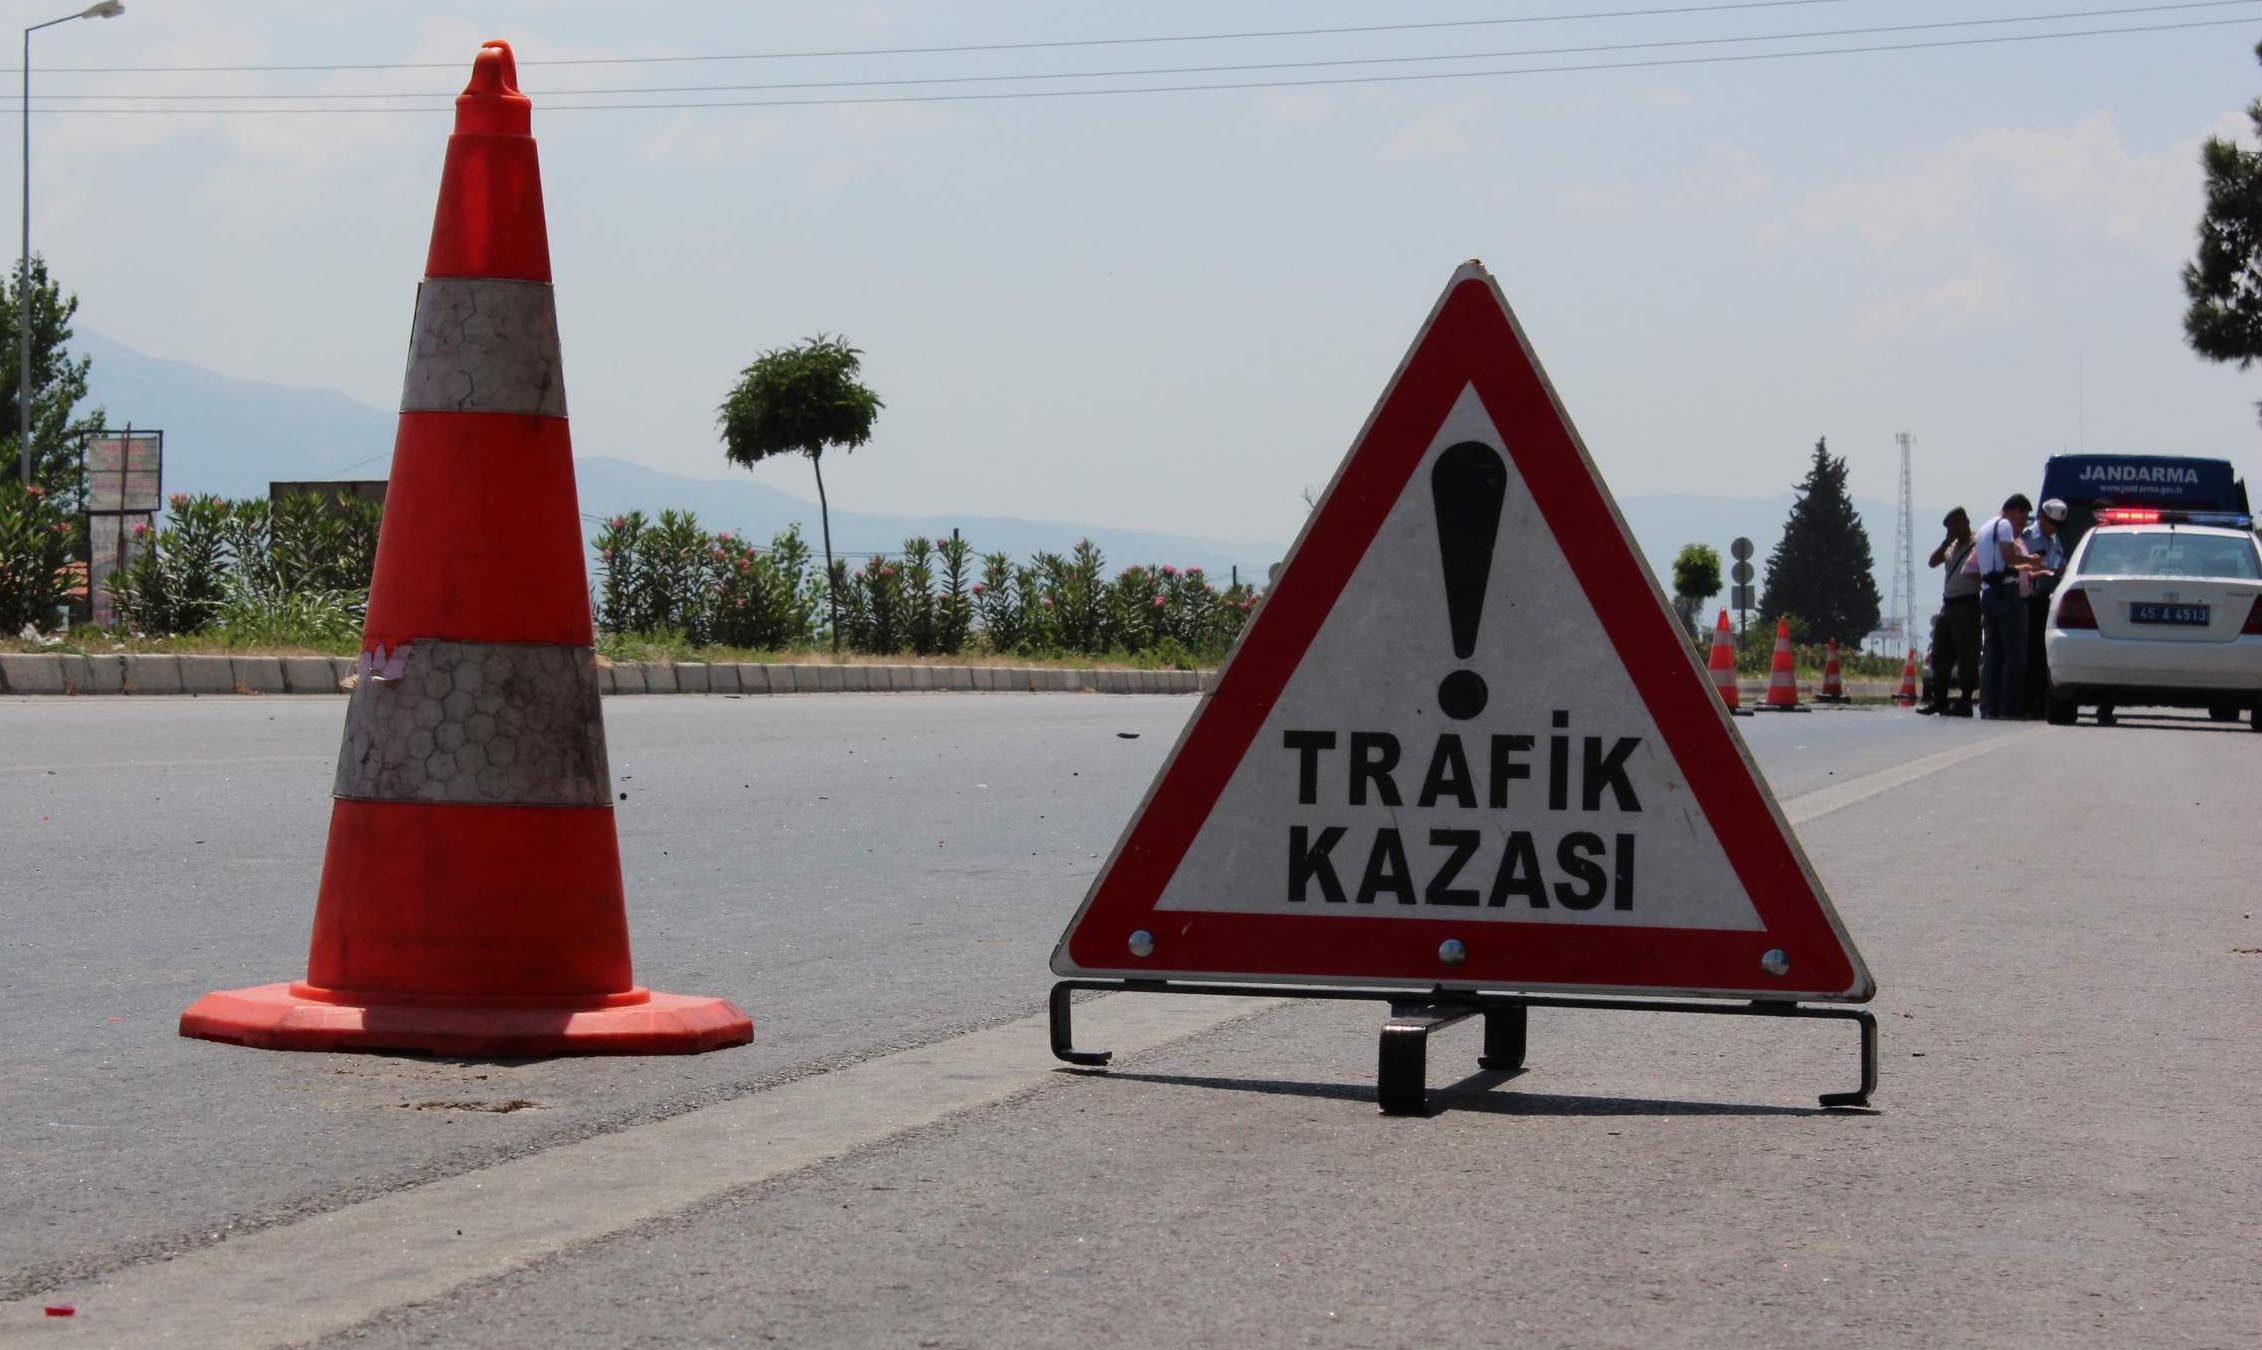 Taşova’da Trafik Kazası: 2 Yaralı